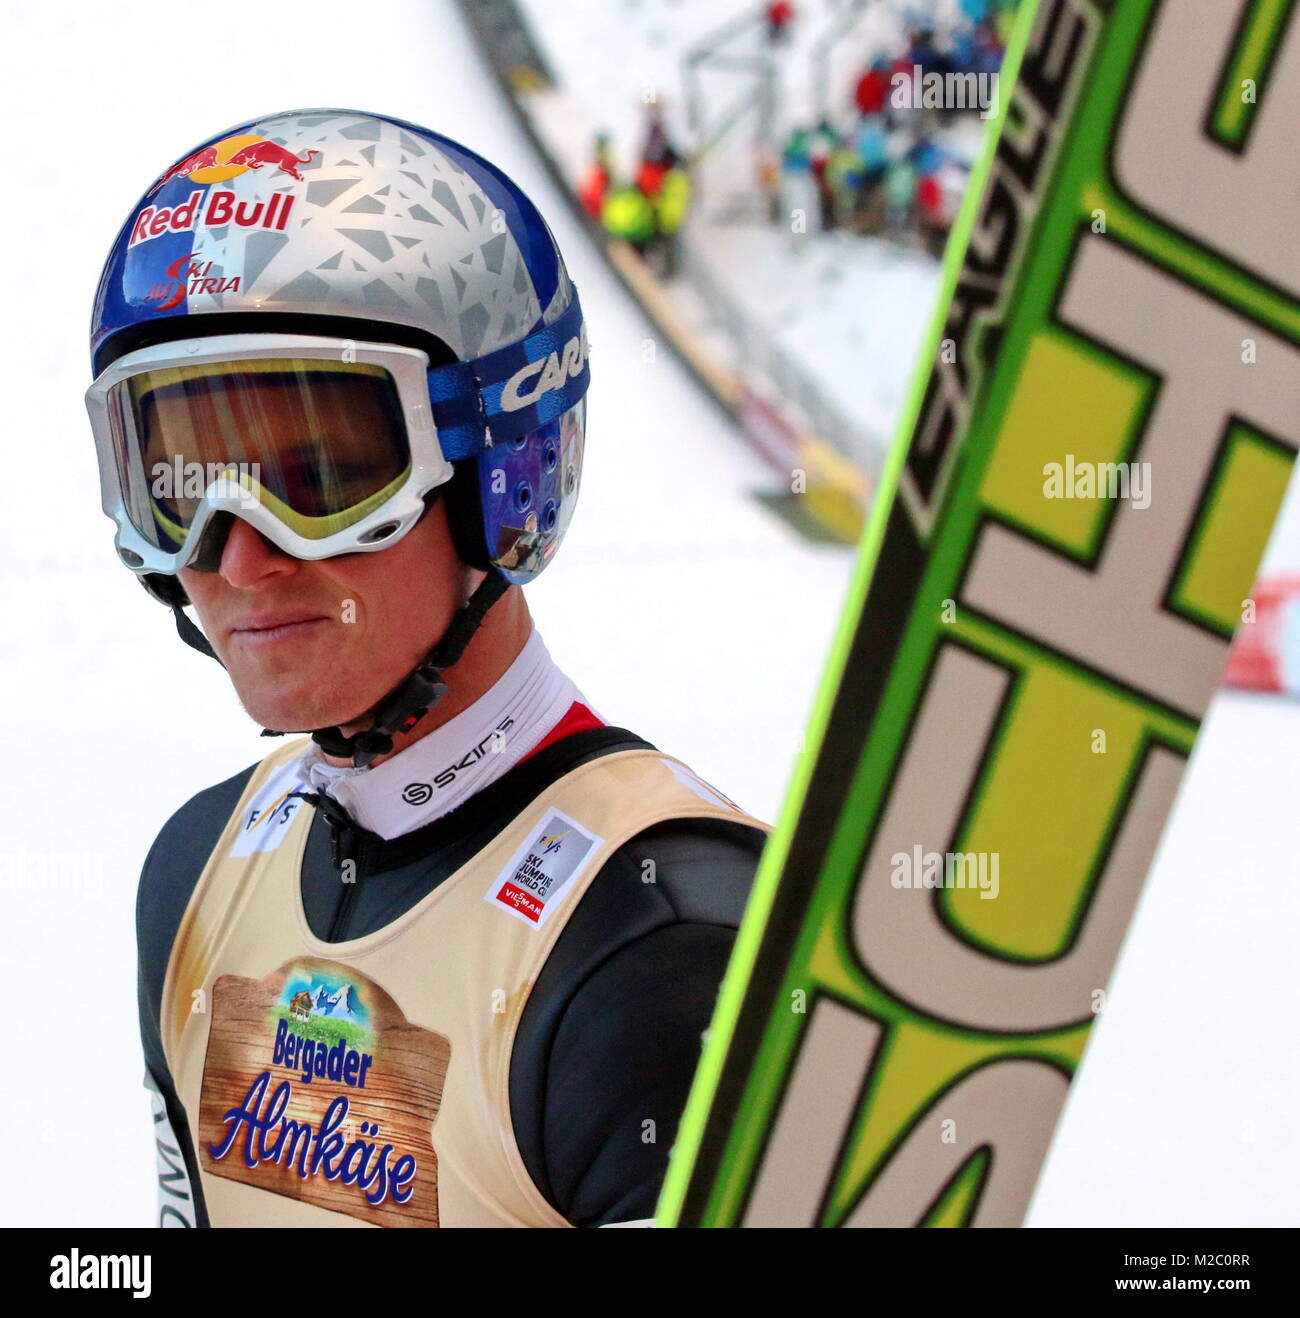 Verschmitzte Olympiasieger Das Lächeln von Thomas Morgenstern - Weltcup Skispringen Titisee-Neustadt - 1. Wettkampf 14.12.13 Banque D'Images